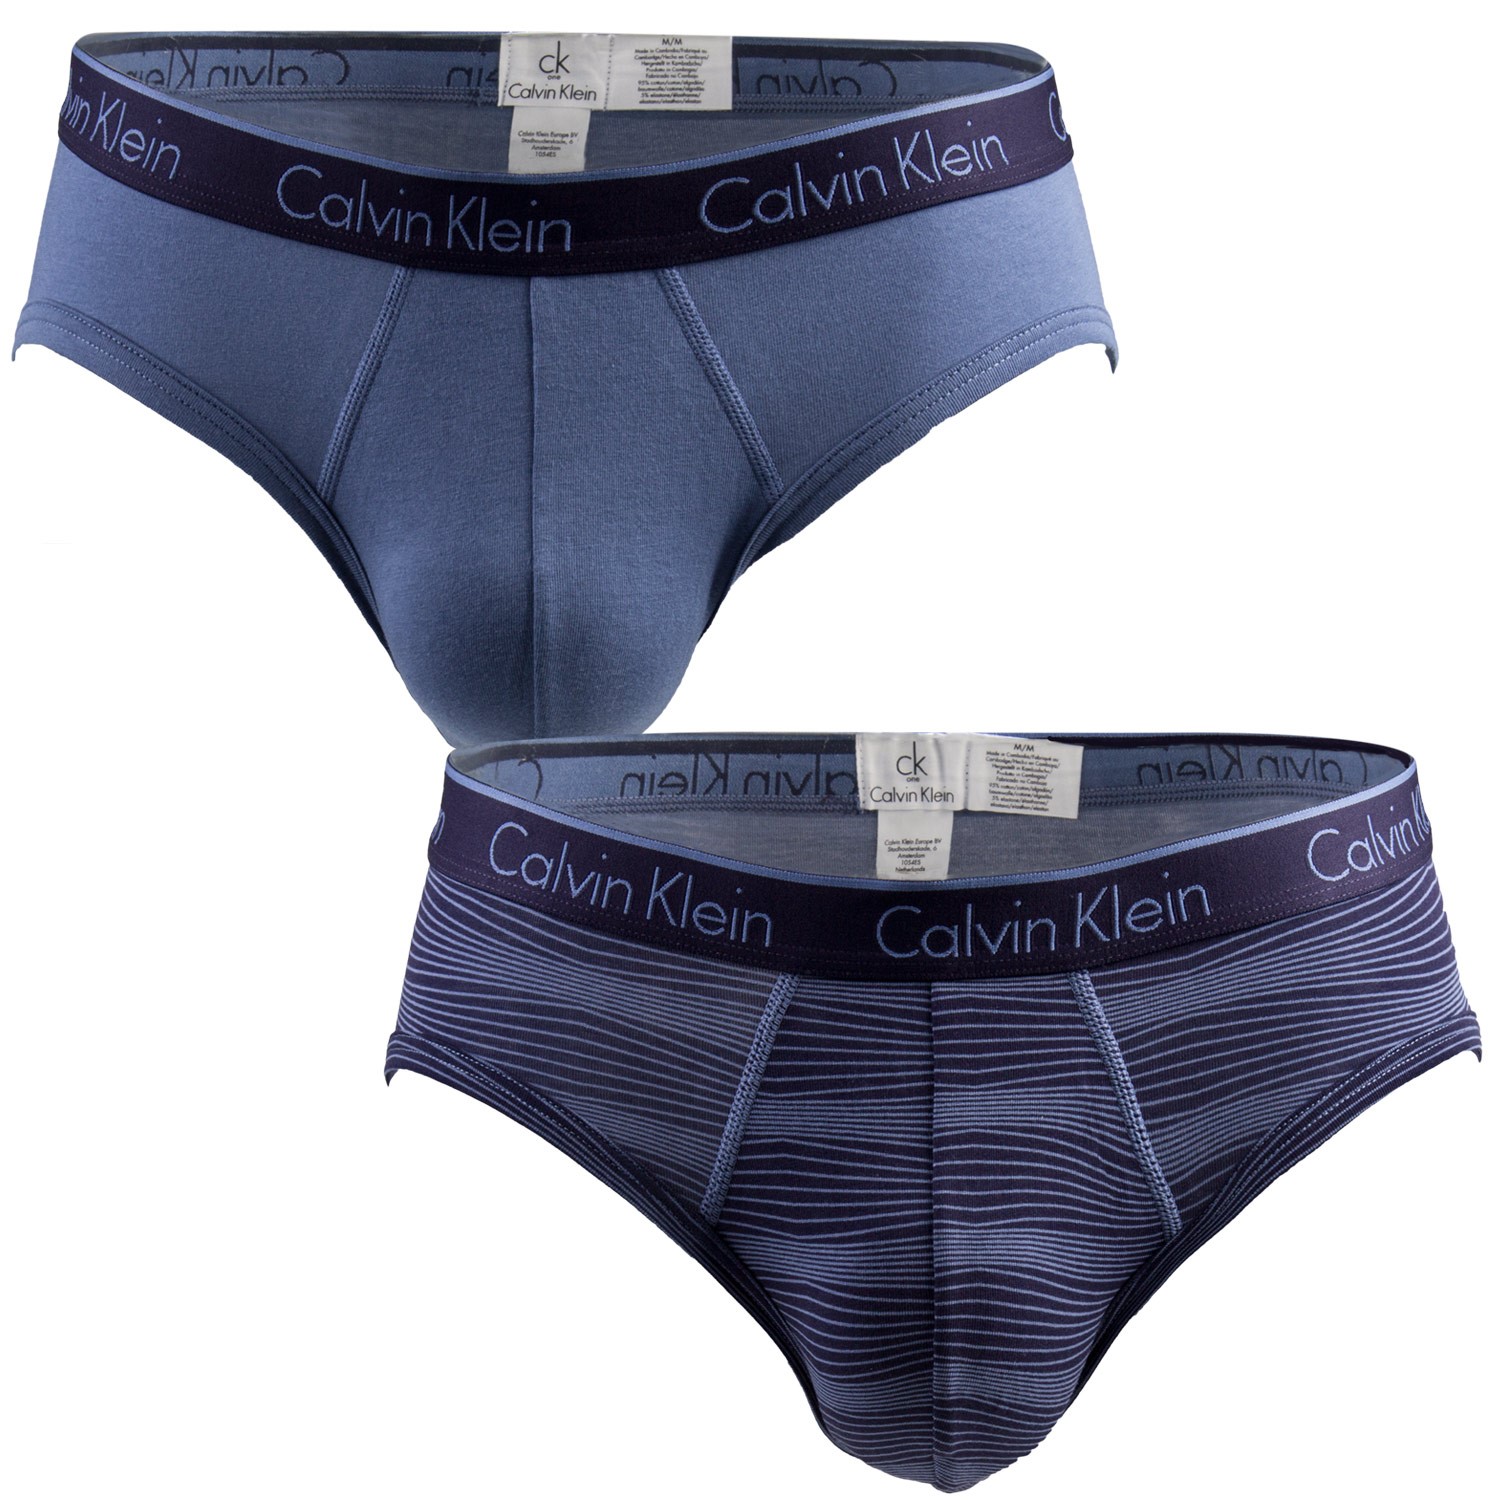 2-Pack Calvin Klein CK One Cotton Hip Briefs - Brief - Trunks ...